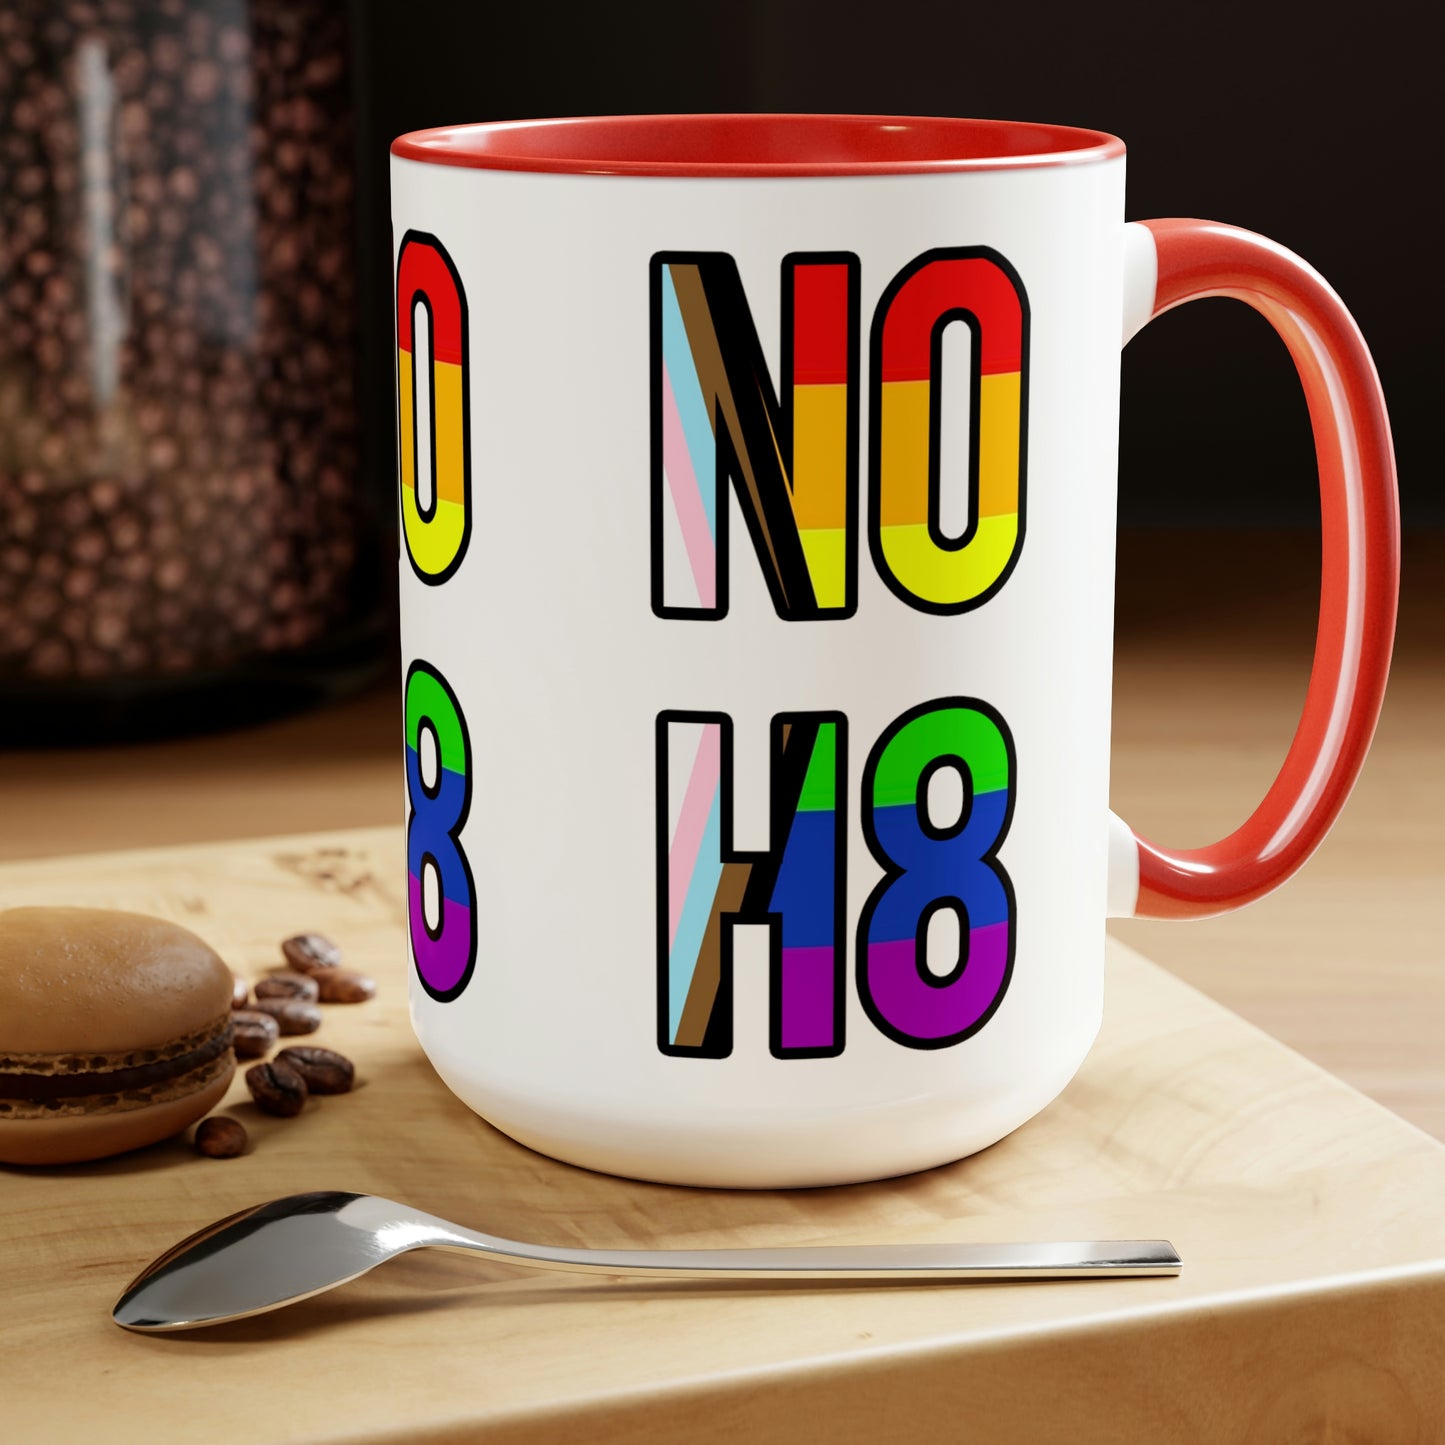 NO H8 Two-Tone Coffee Mugs, 15 oz